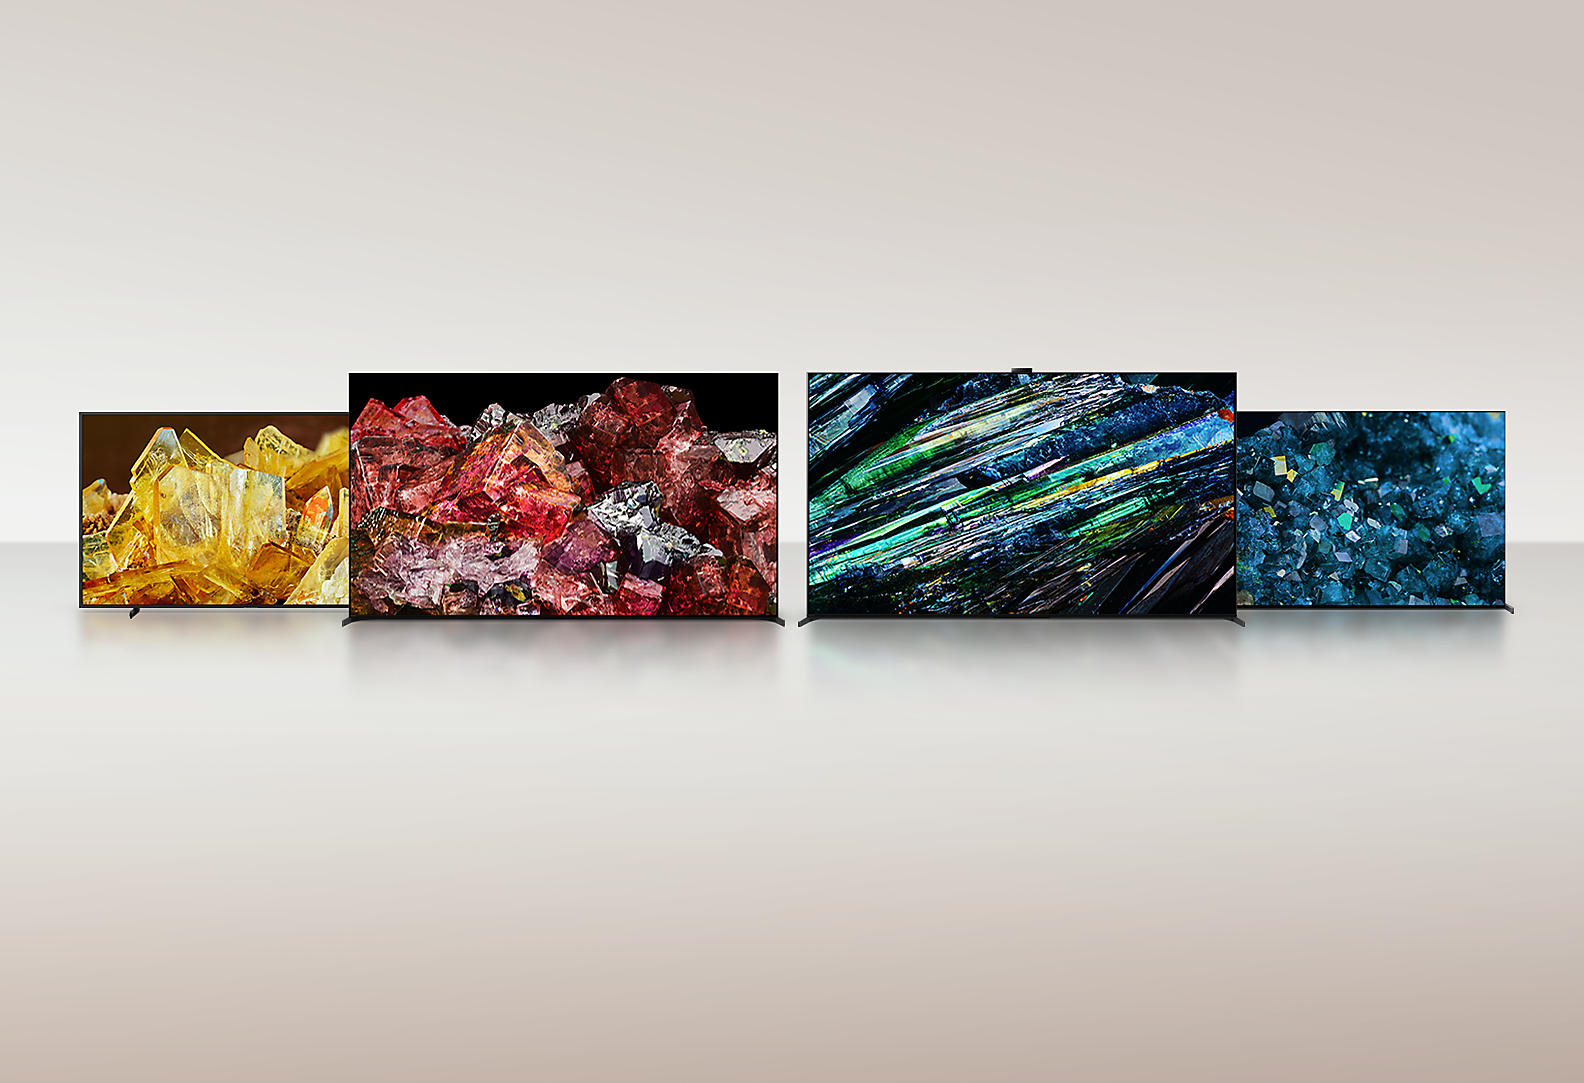 Vier BRAVIA XR Fernseher, die Bilder von verschiedenen Kristallarten im Vollbildmodus und mit außergewöhnlicher Detailliertheit und Farbe zeigen